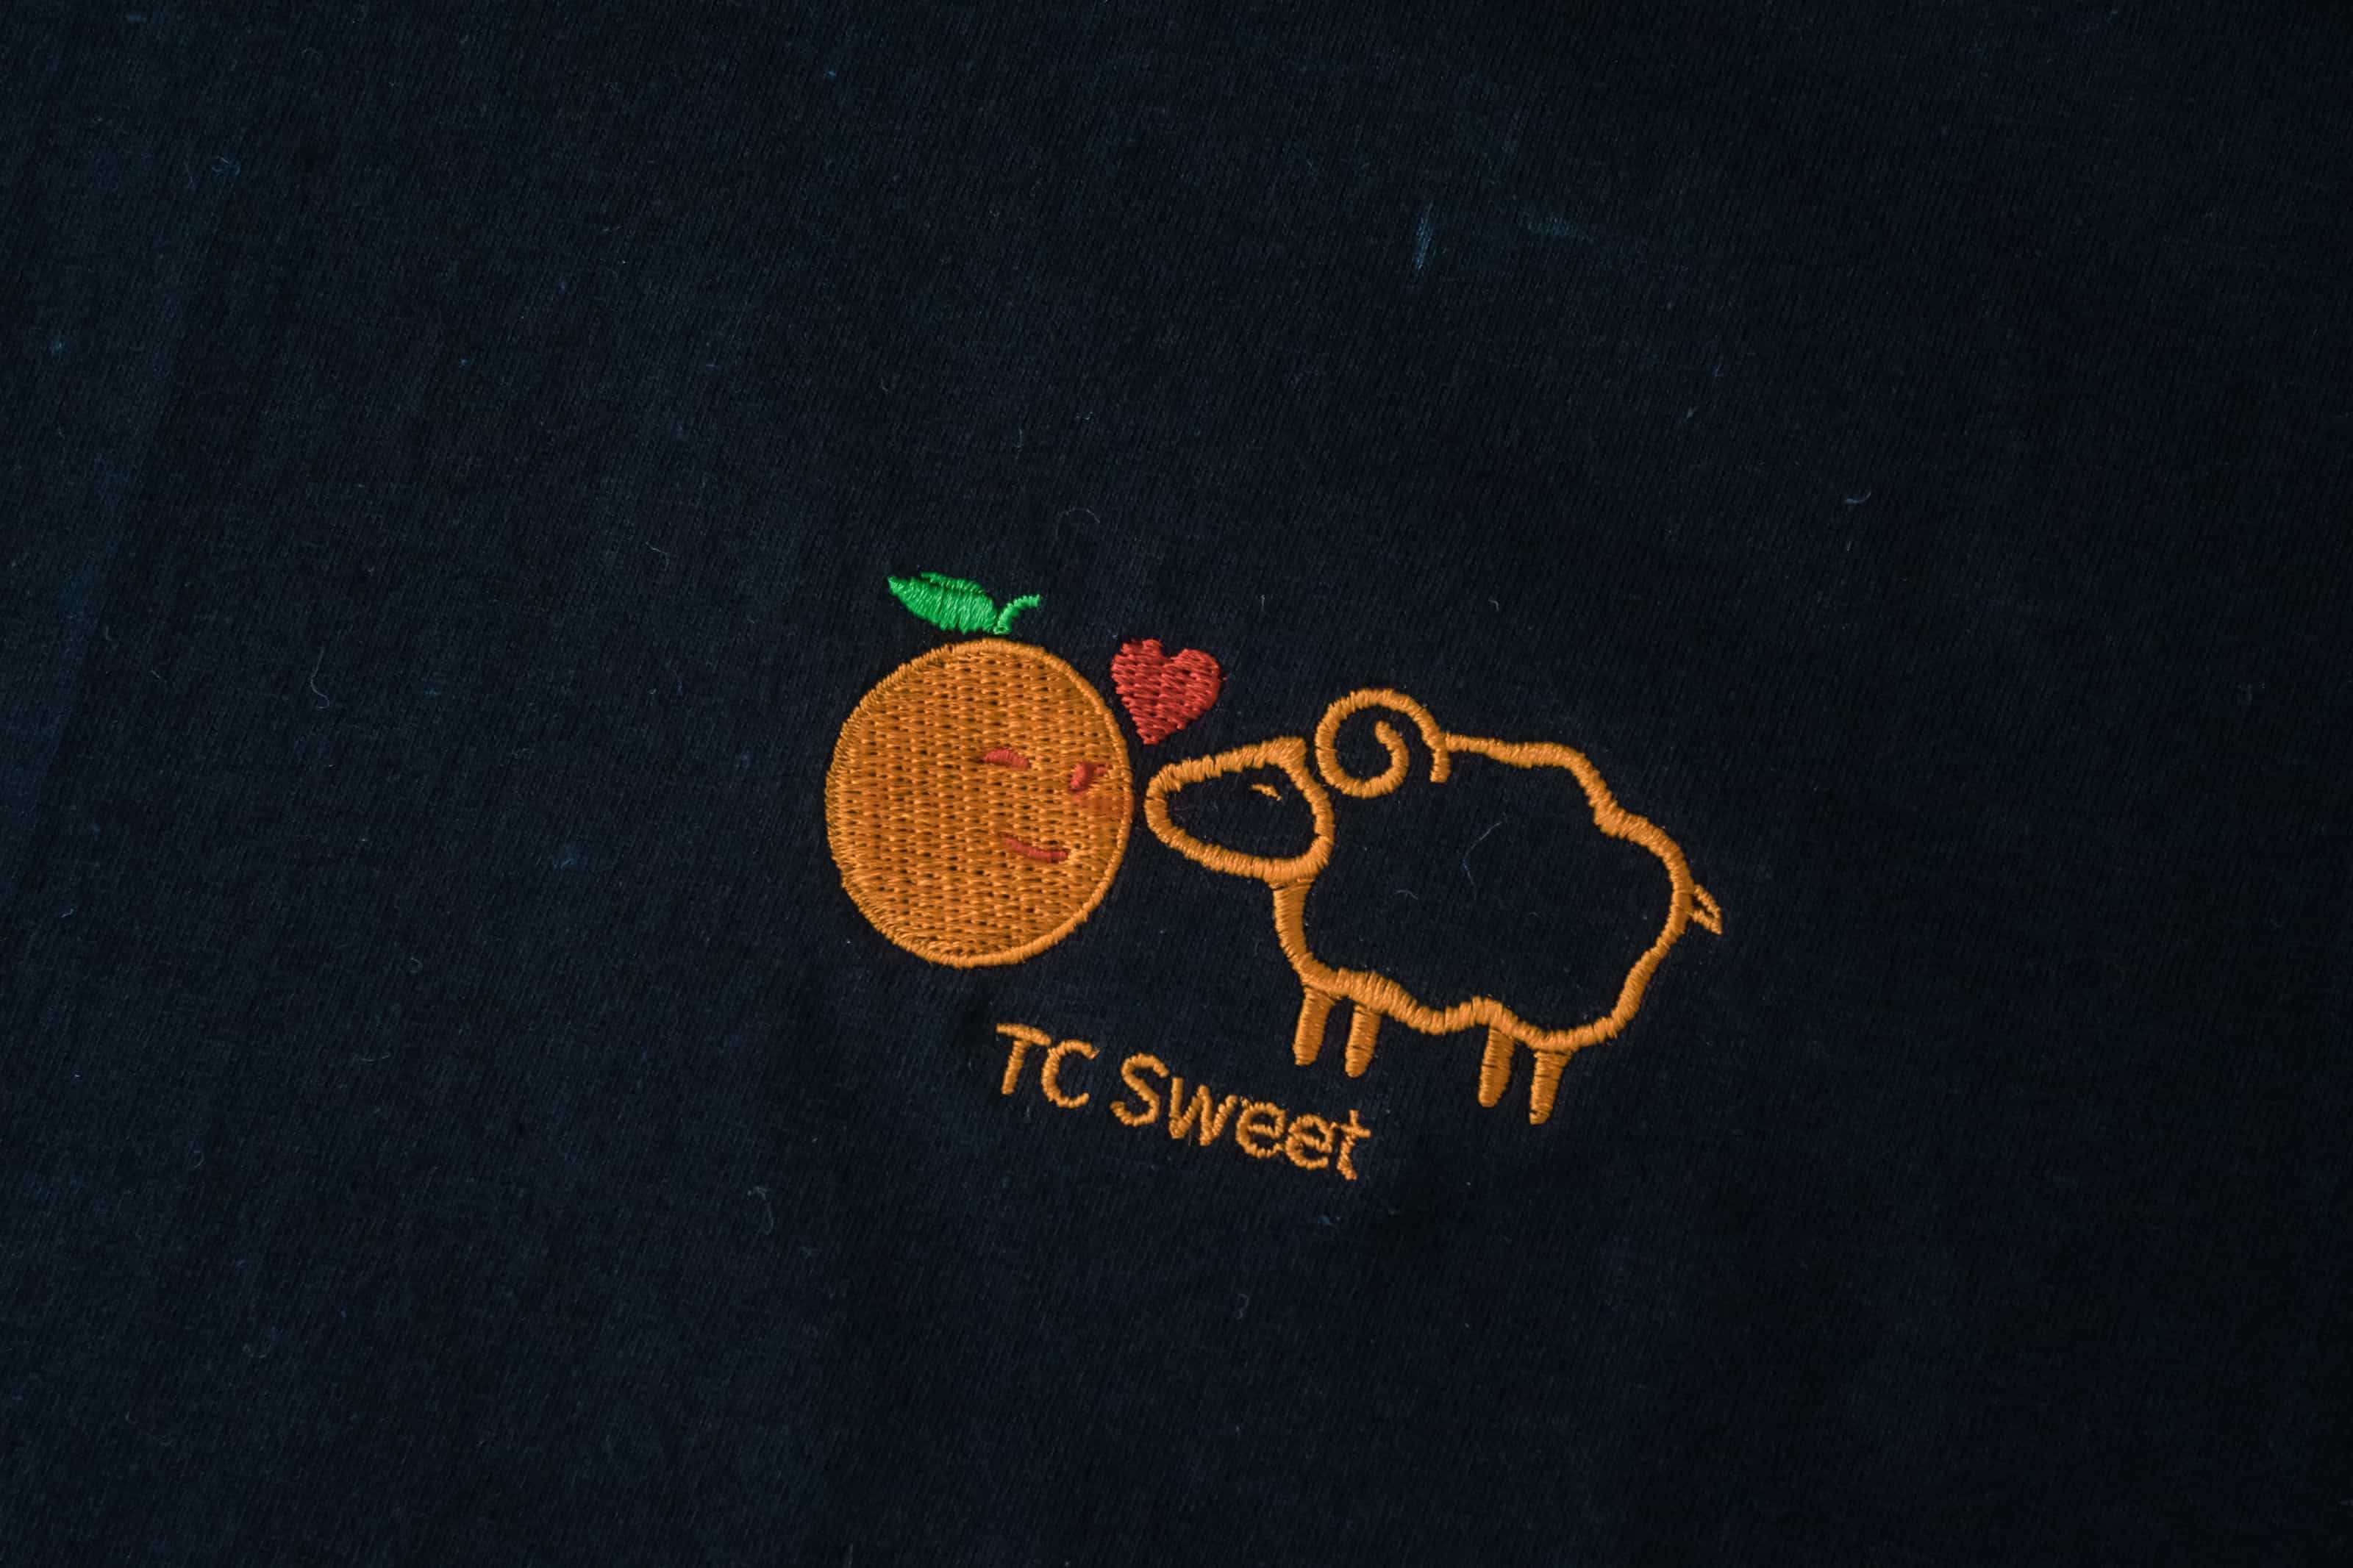 客製化T恤-TC Sweet 客製化T恤的第2張圖(客製化公司制服、班服製作、團體服製作等示意或作品圖)